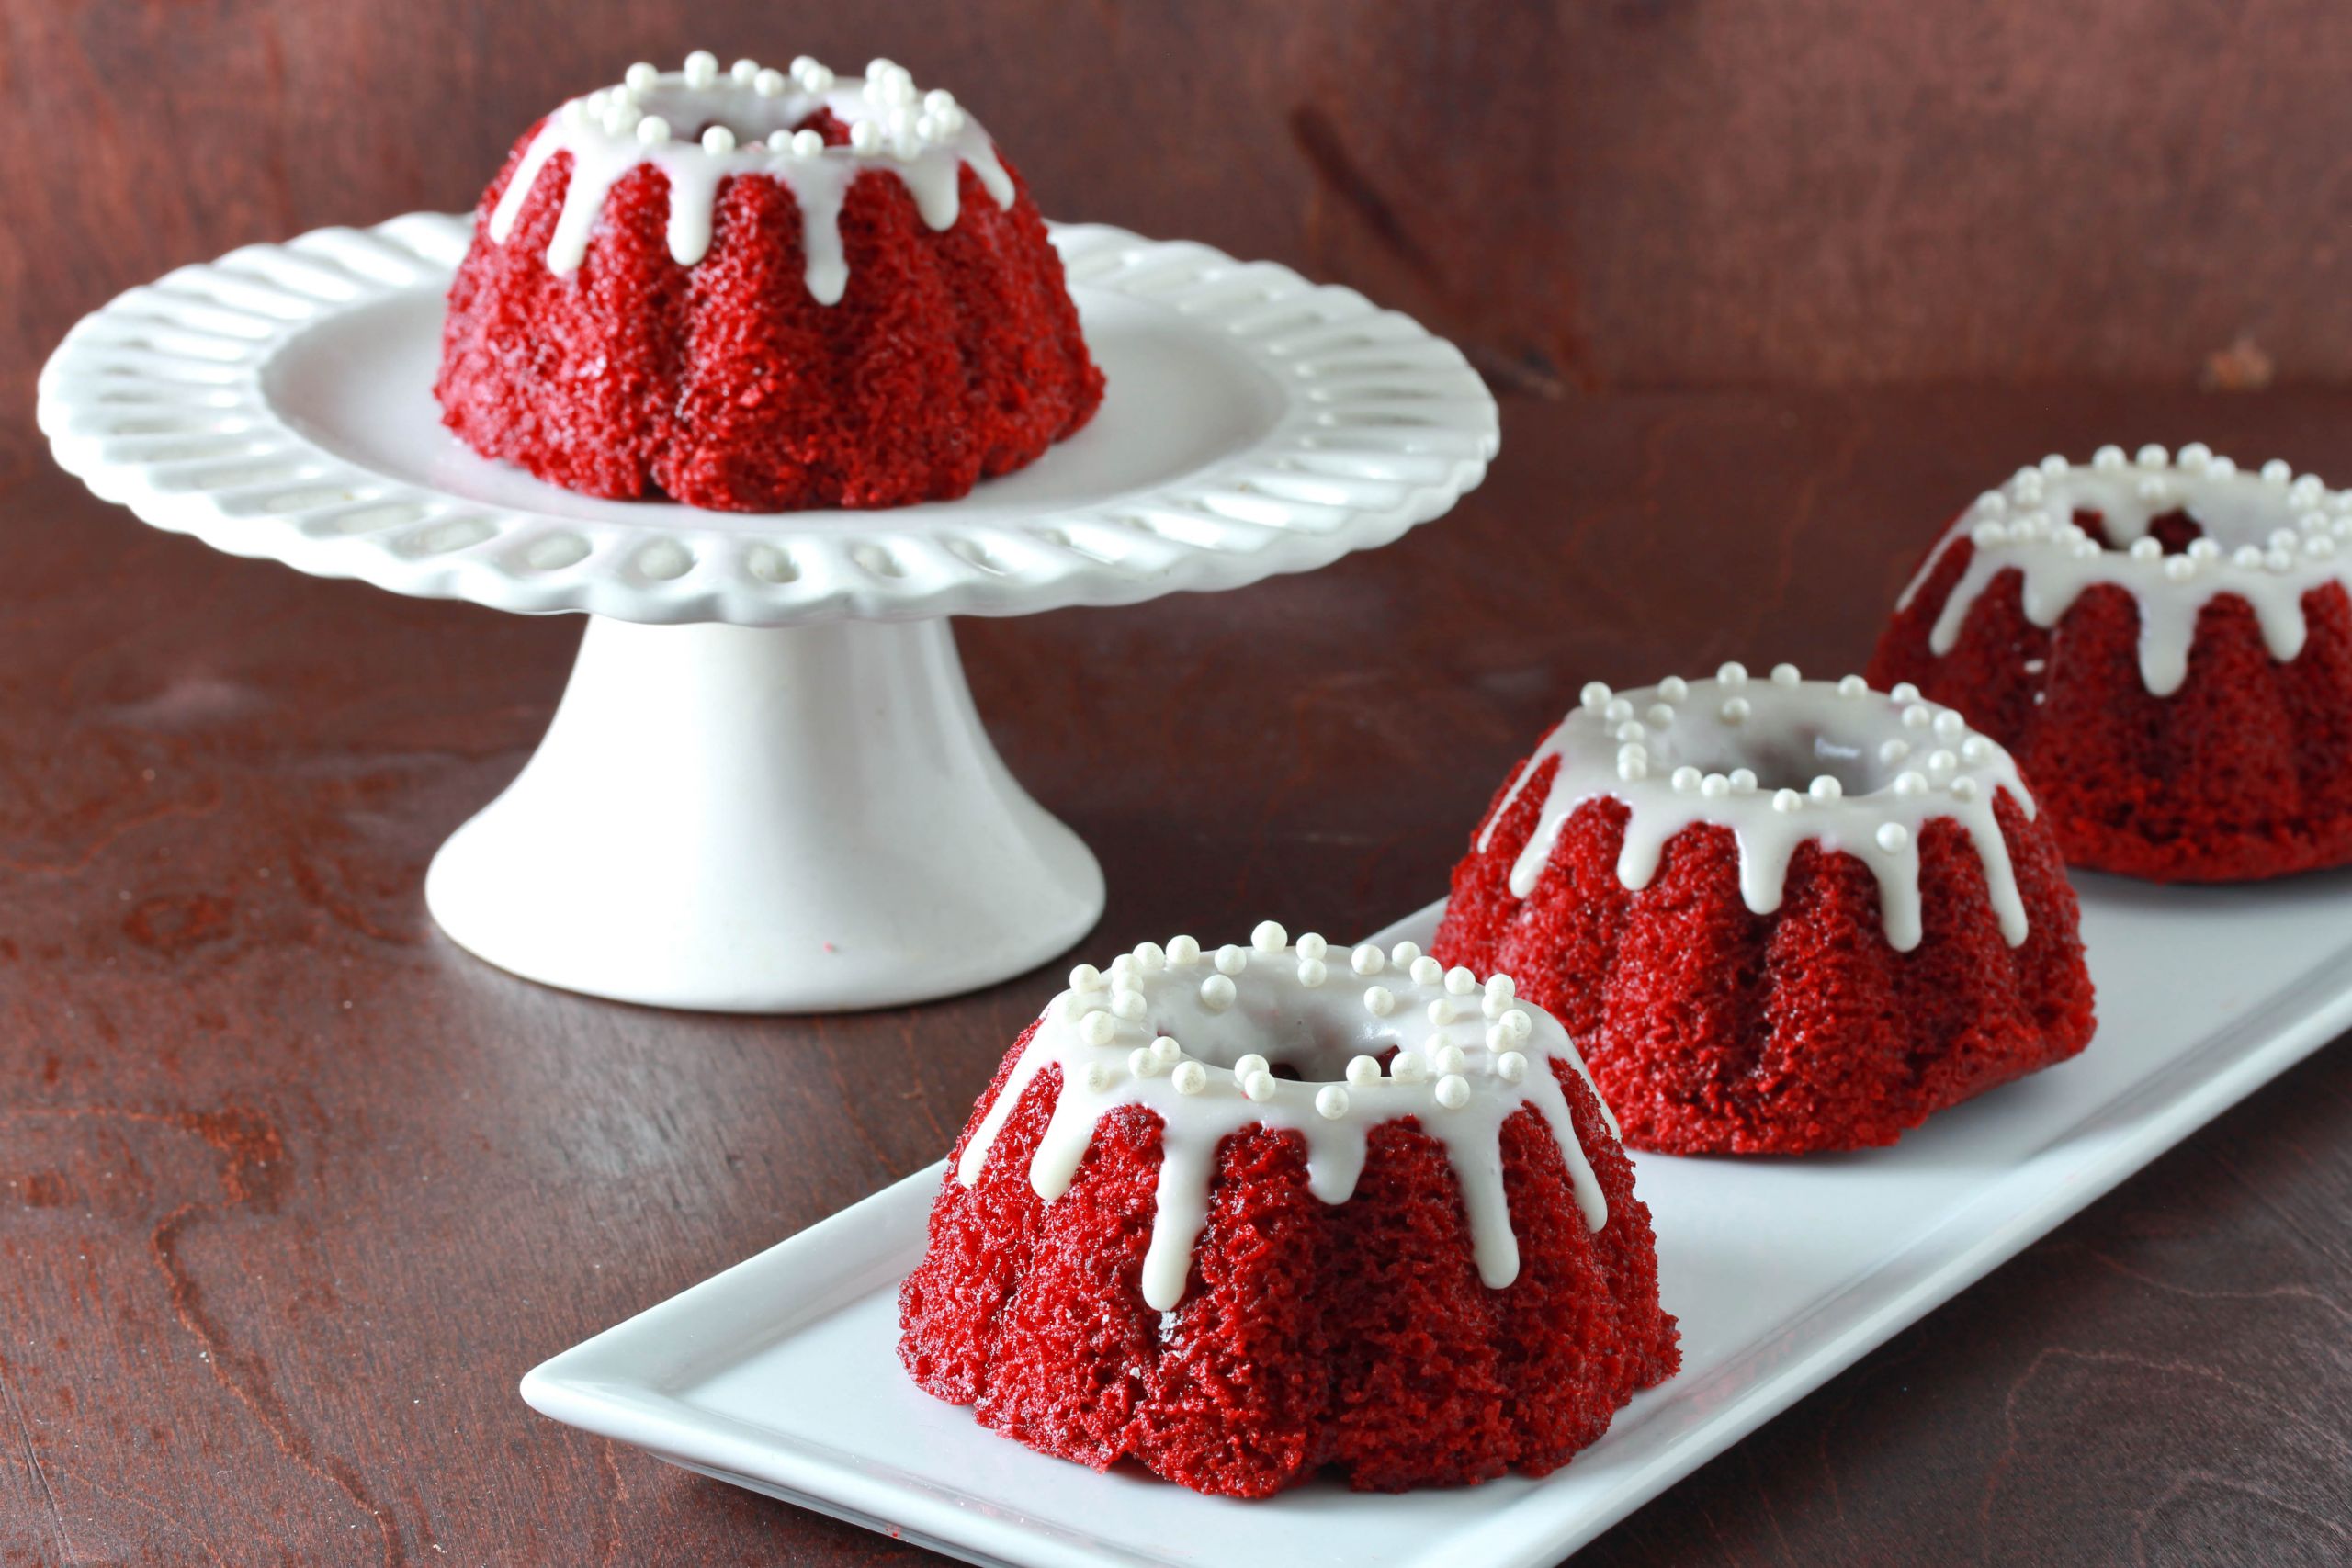 Red Velvet Bundt Cake
 Mini Red Velvet Bundt Cakes with Cream Cheese Glaze